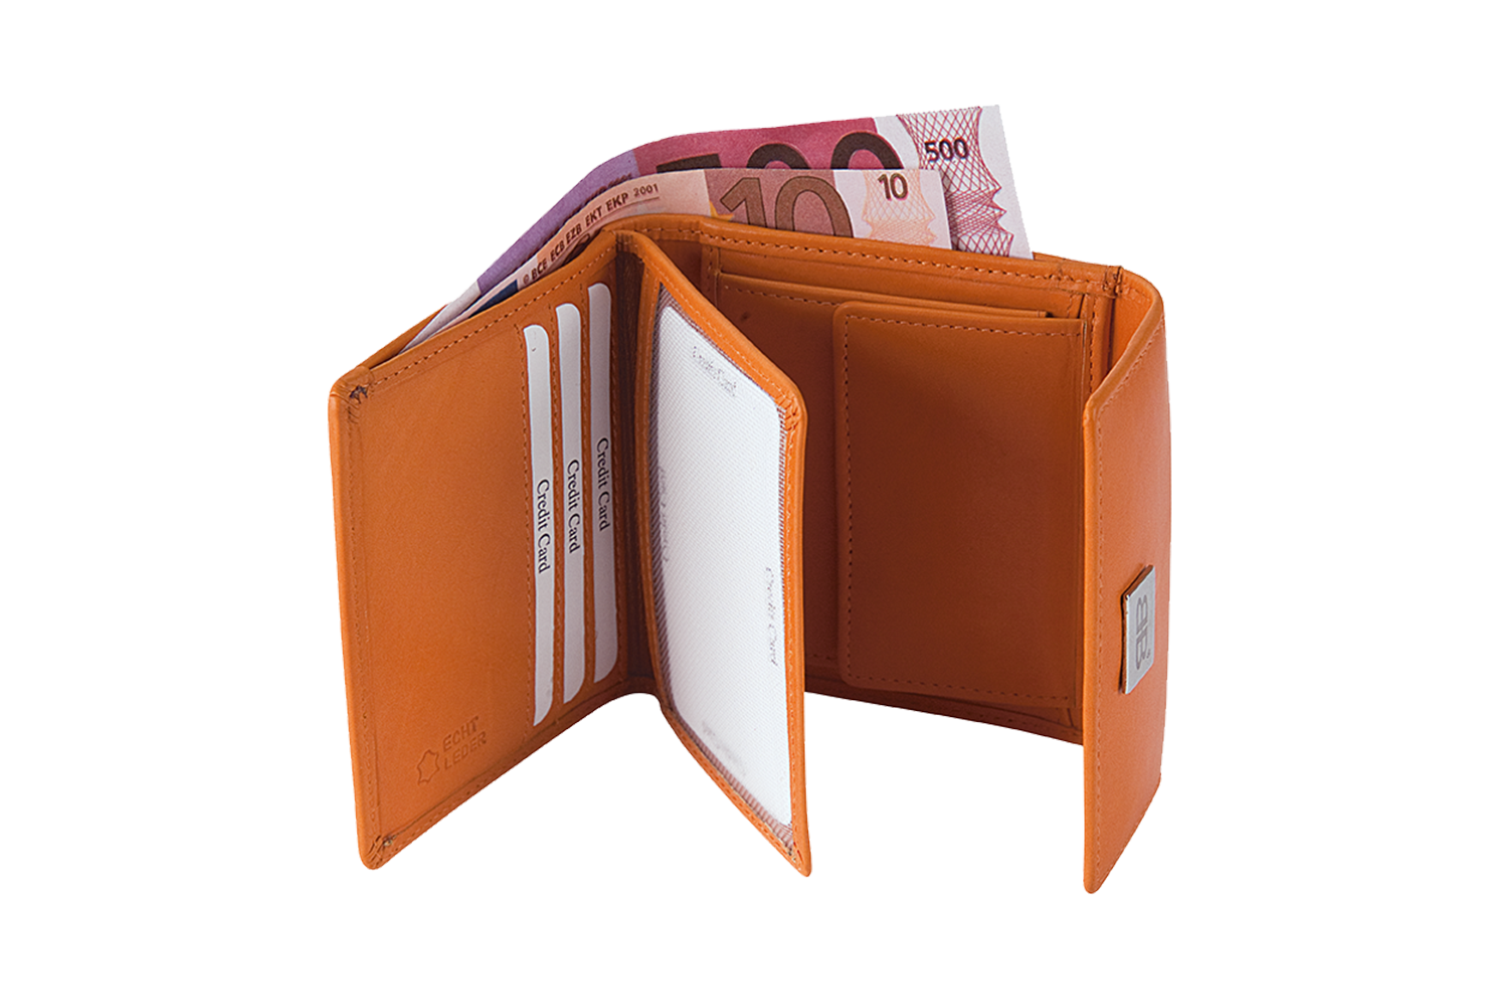 Kleine Damenbörse Minibörse mit Flügelwand in rot LEDER RFID - 859-019-70